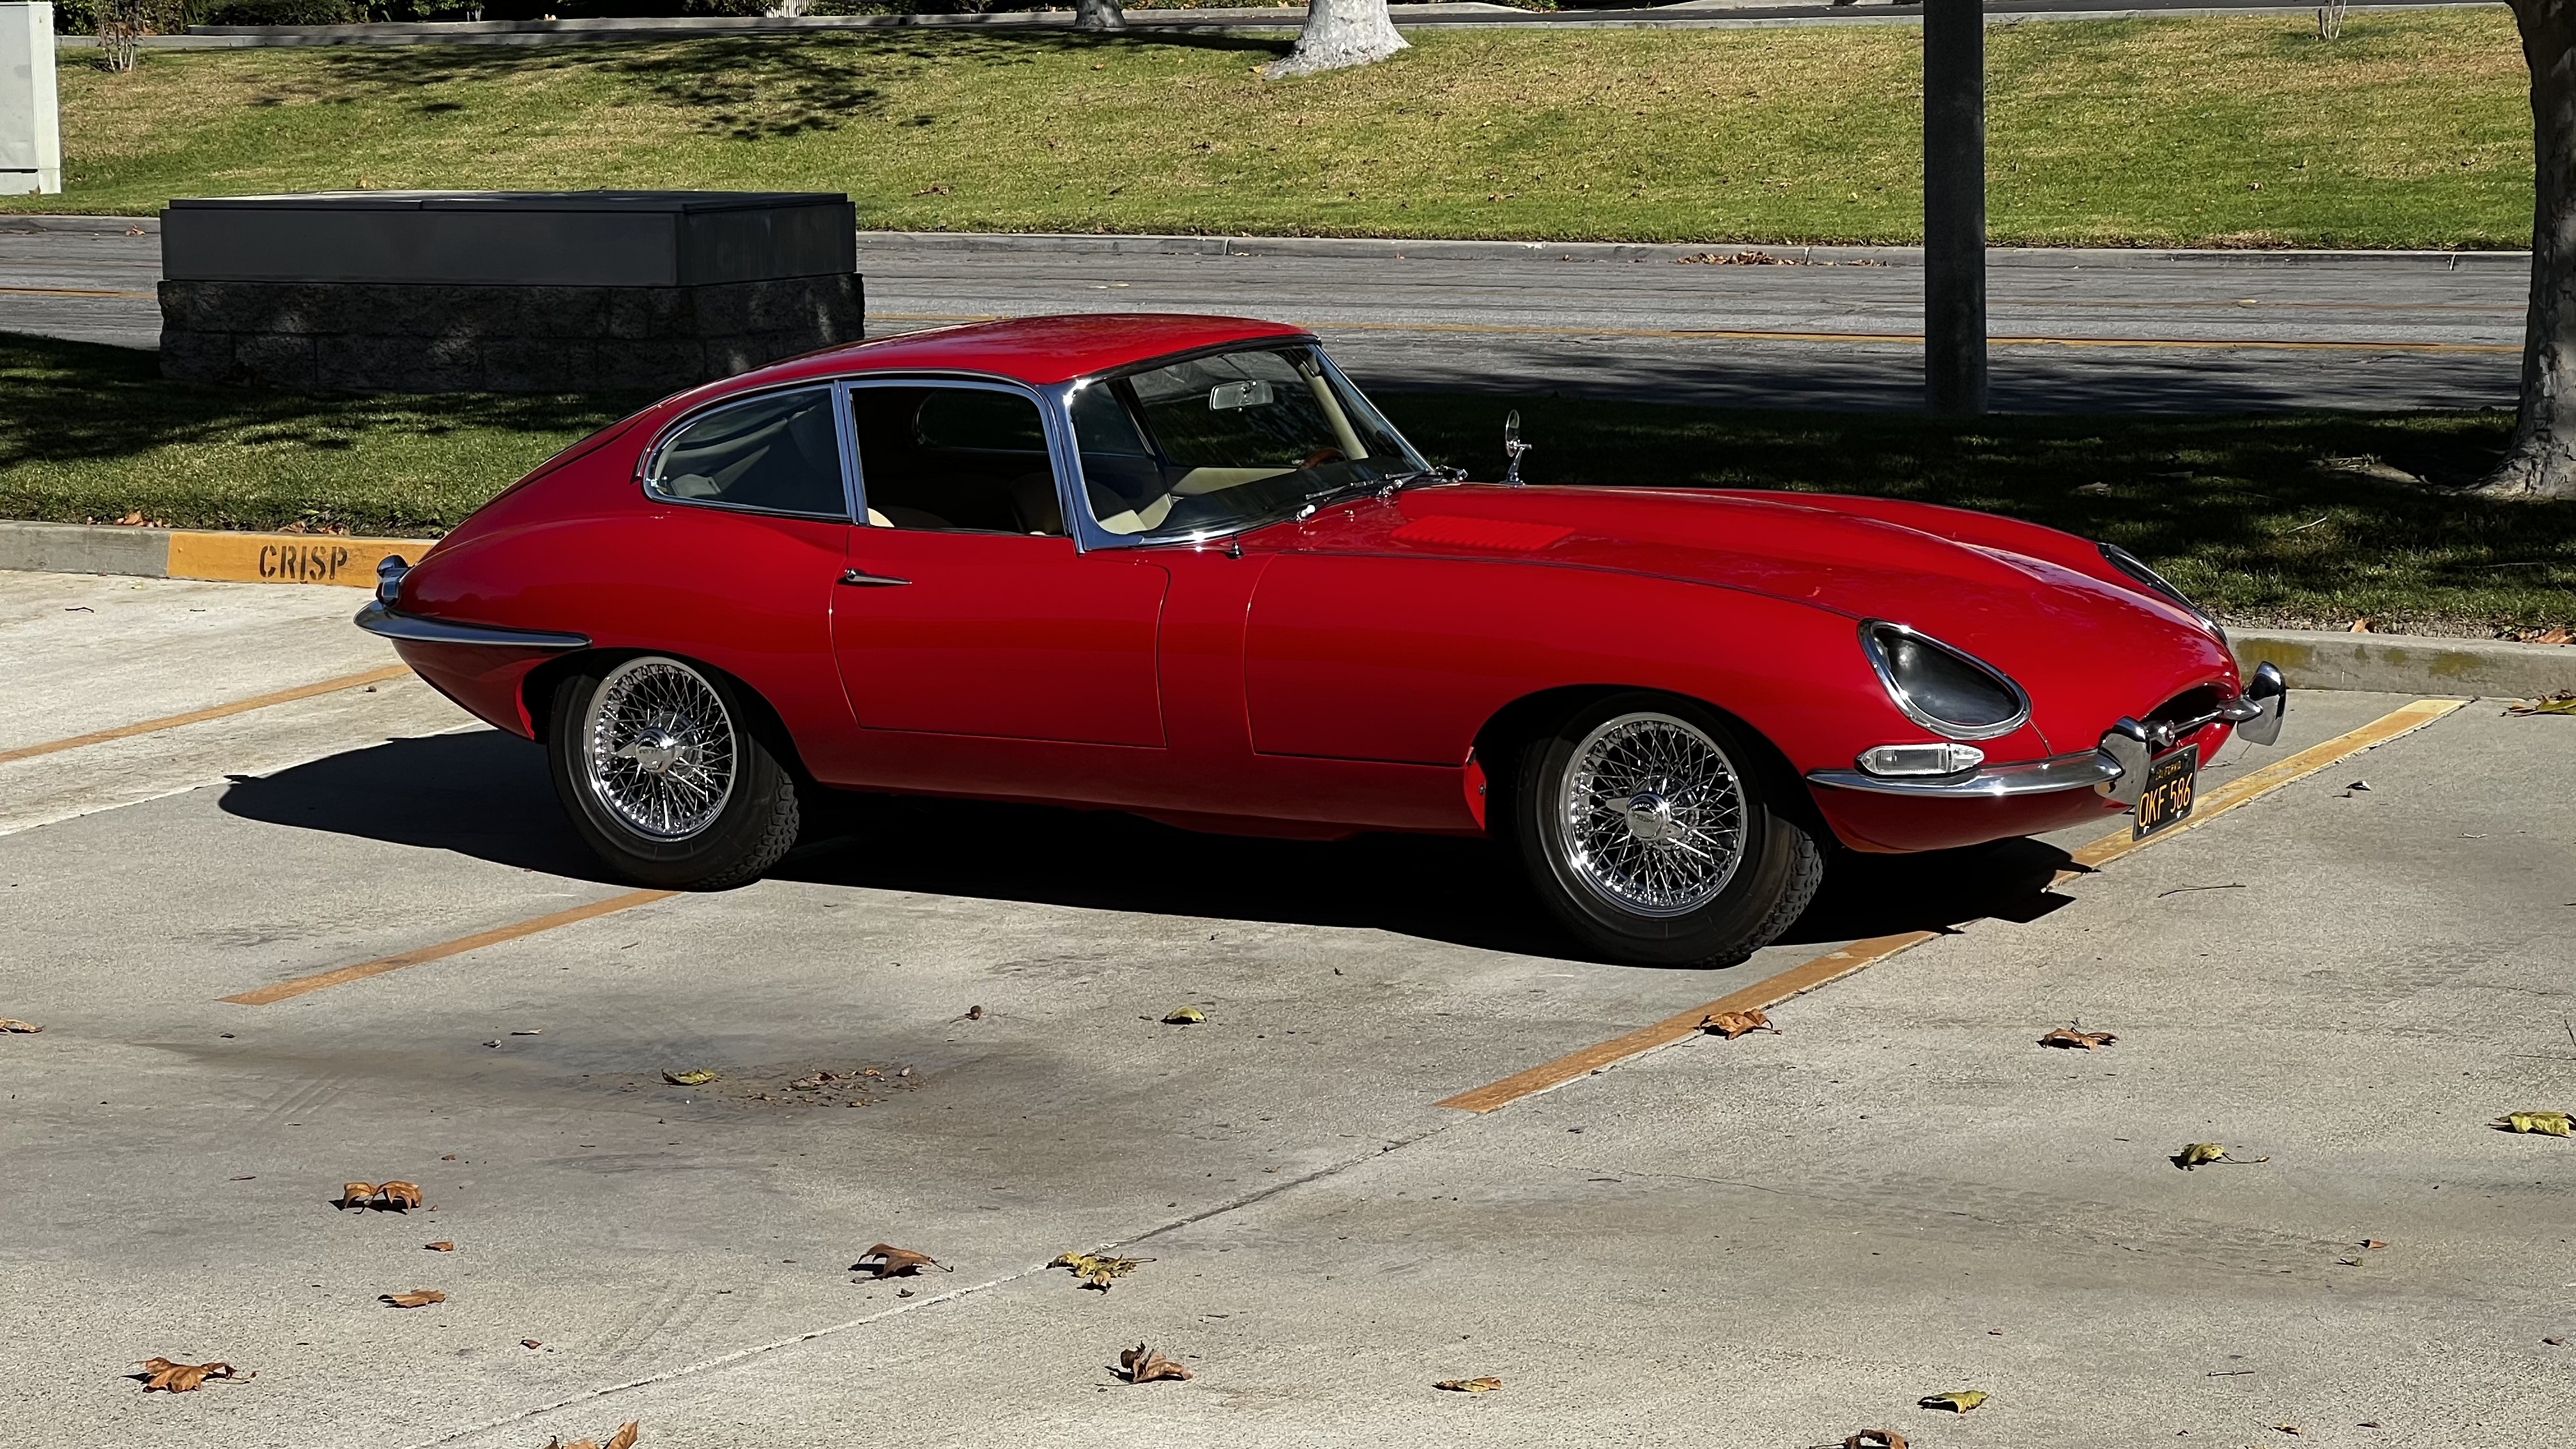 1956 Jaguar D-Tpye